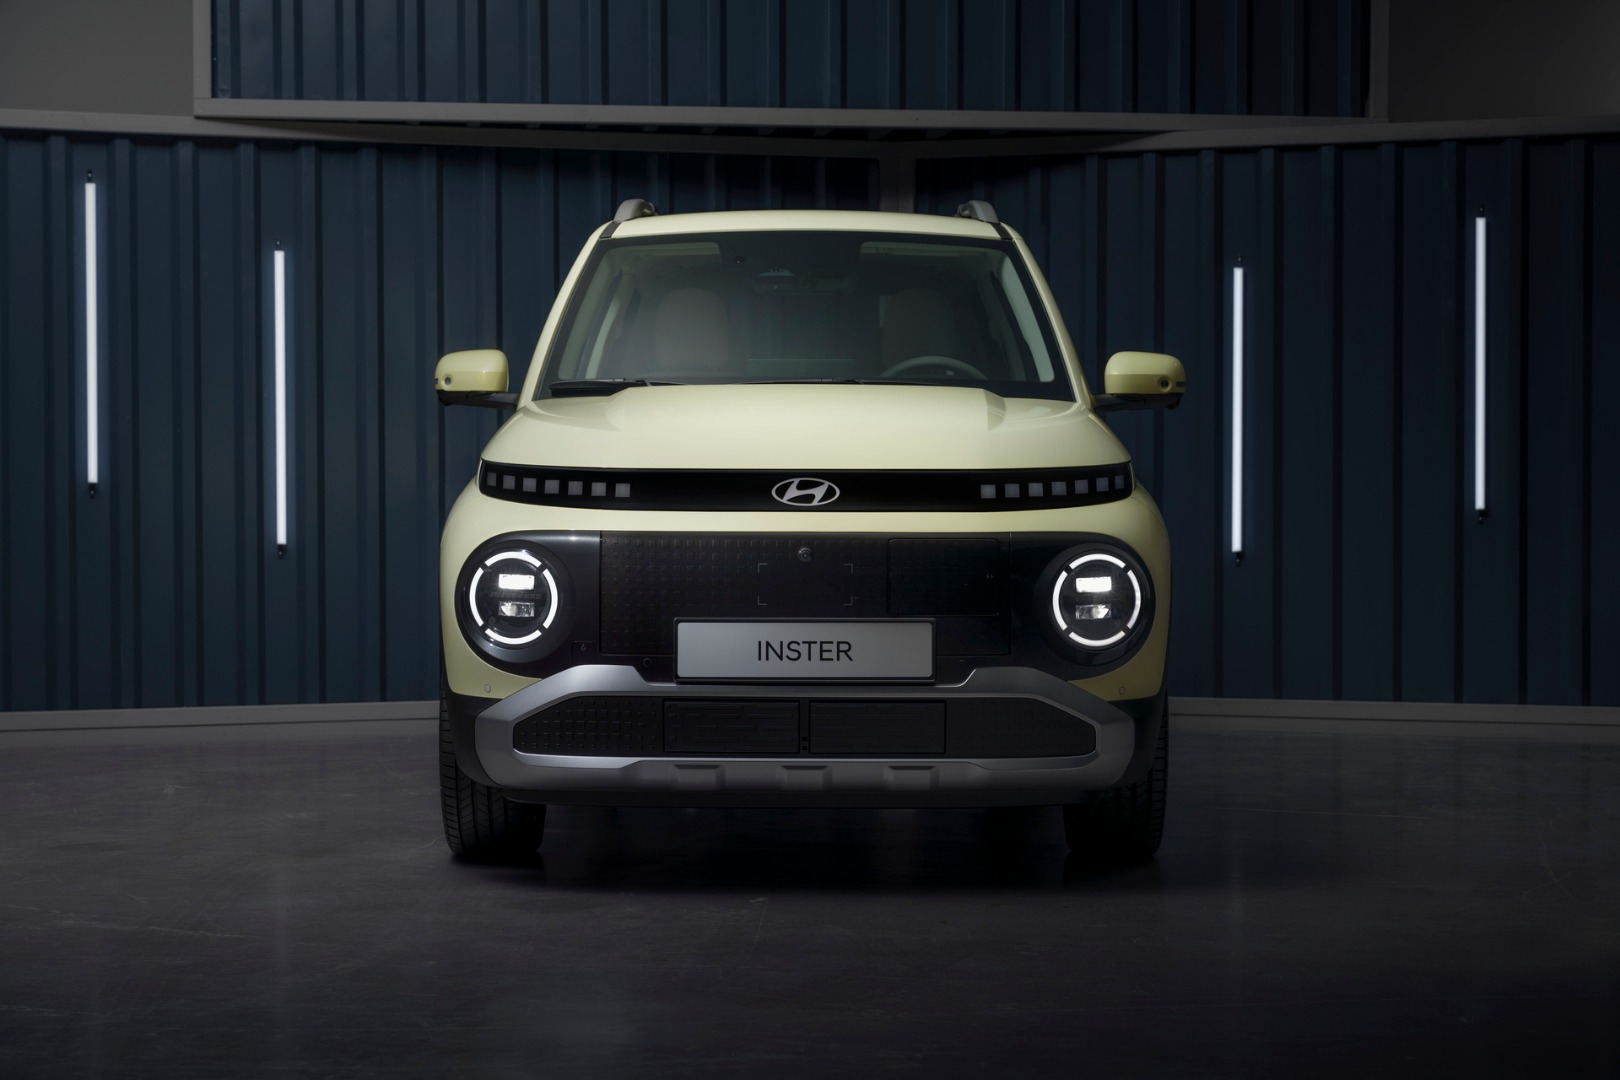 Novo Hyundai INSTER: 100% elétrico chega com autonomia e versatilidade líderes no segmento